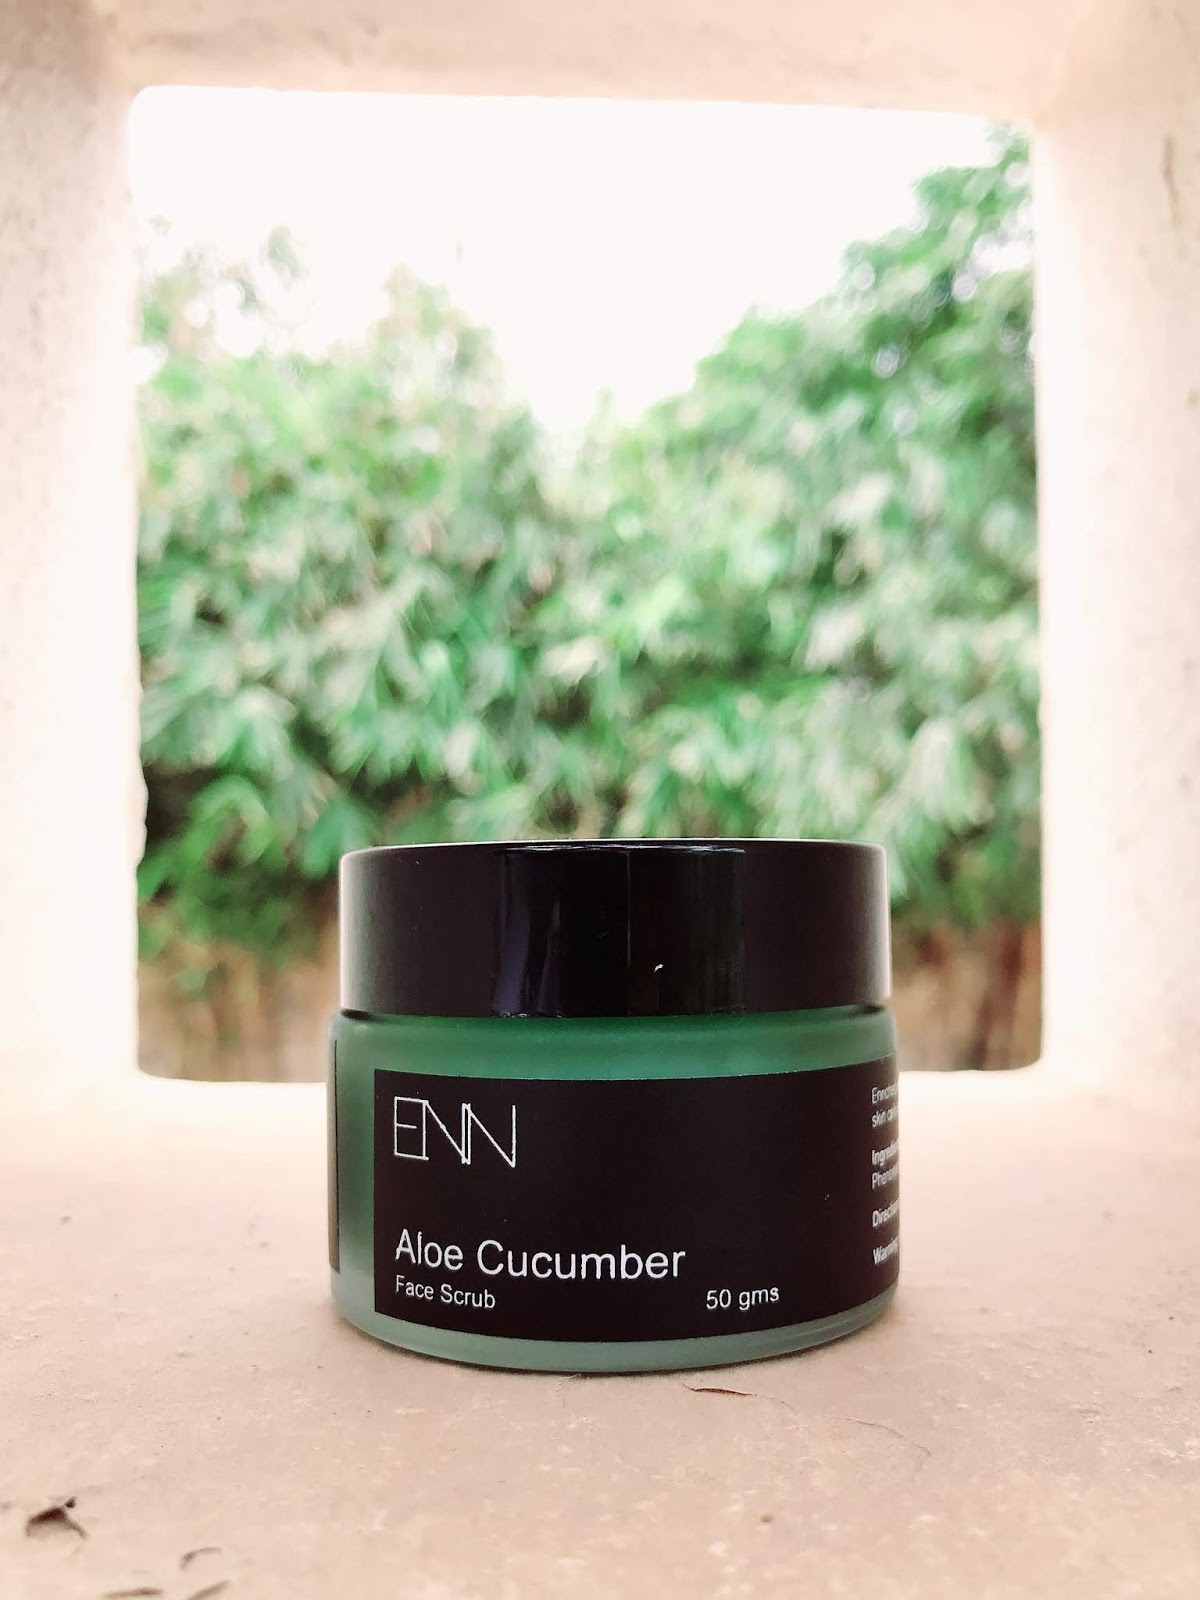 ENN Aloe Cucumber Face Scrub Review